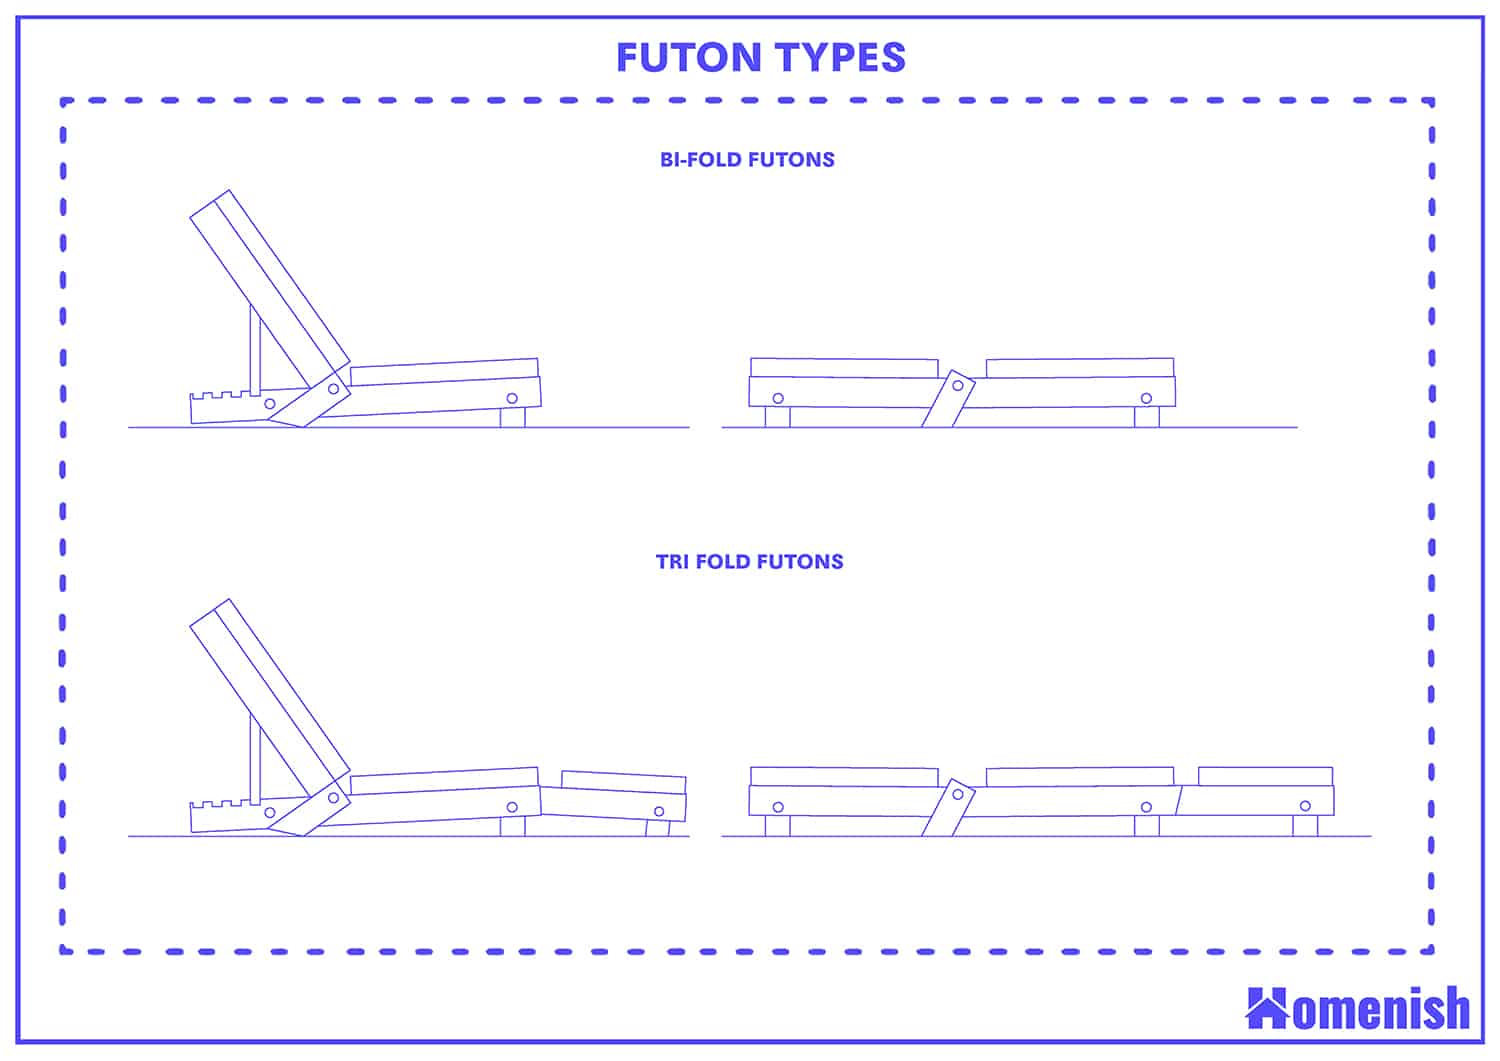 Futon Types